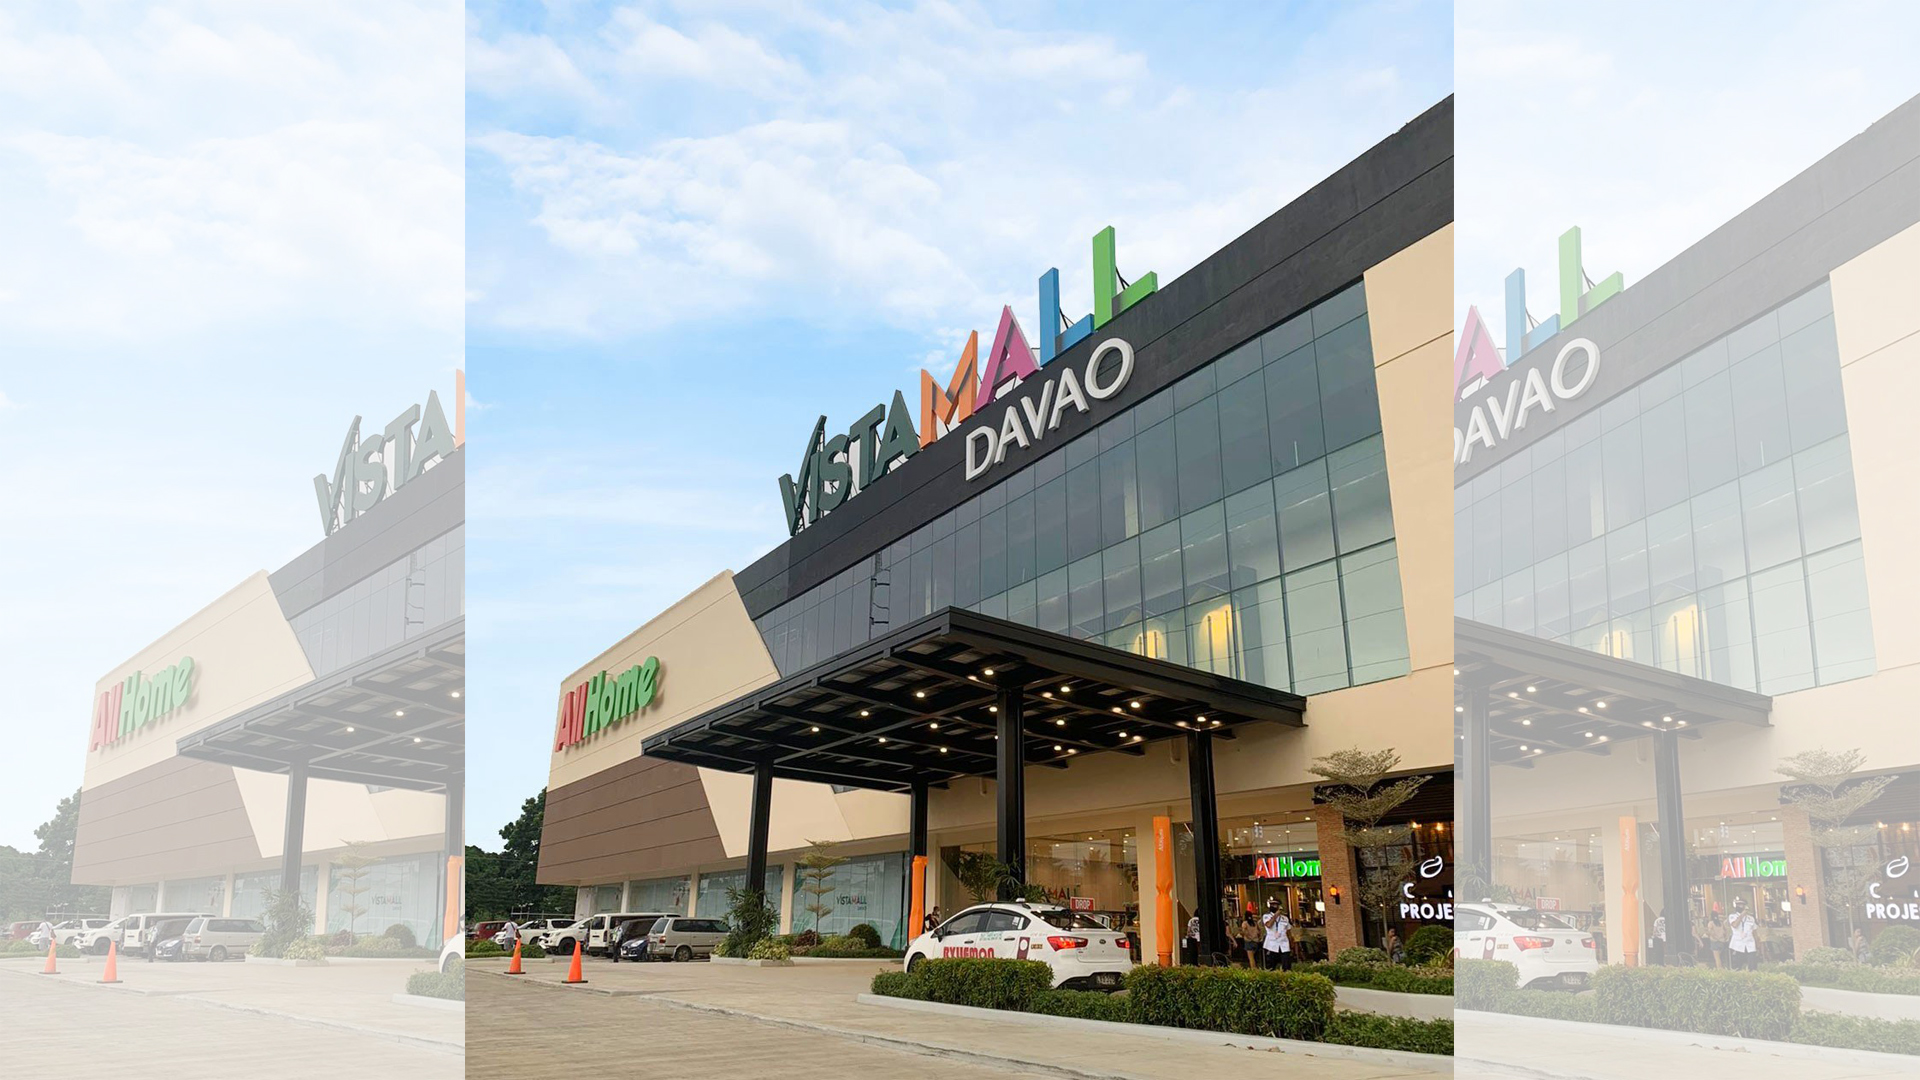 vista-mall-davao-now-open-june-2022-b.jpg, Jun 2022